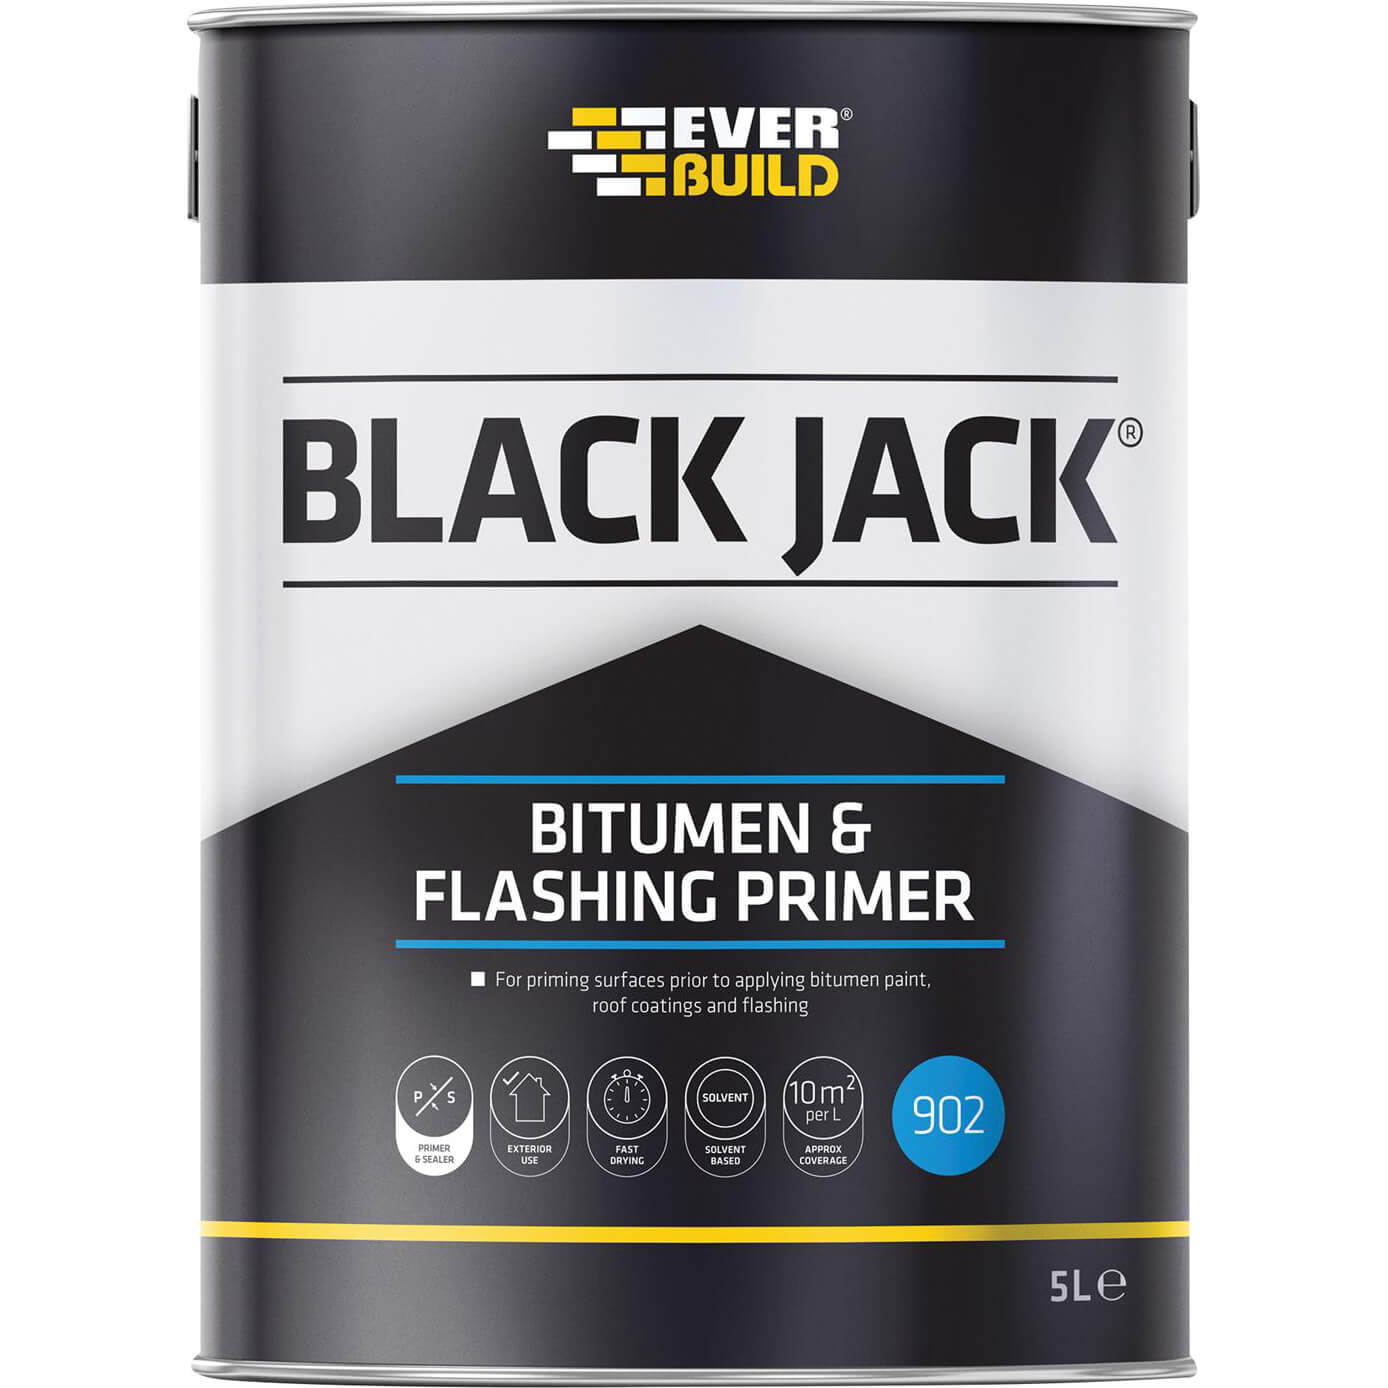 Image of Everbuild Black Jack 902 Bitumen and Flashing Primer 5l